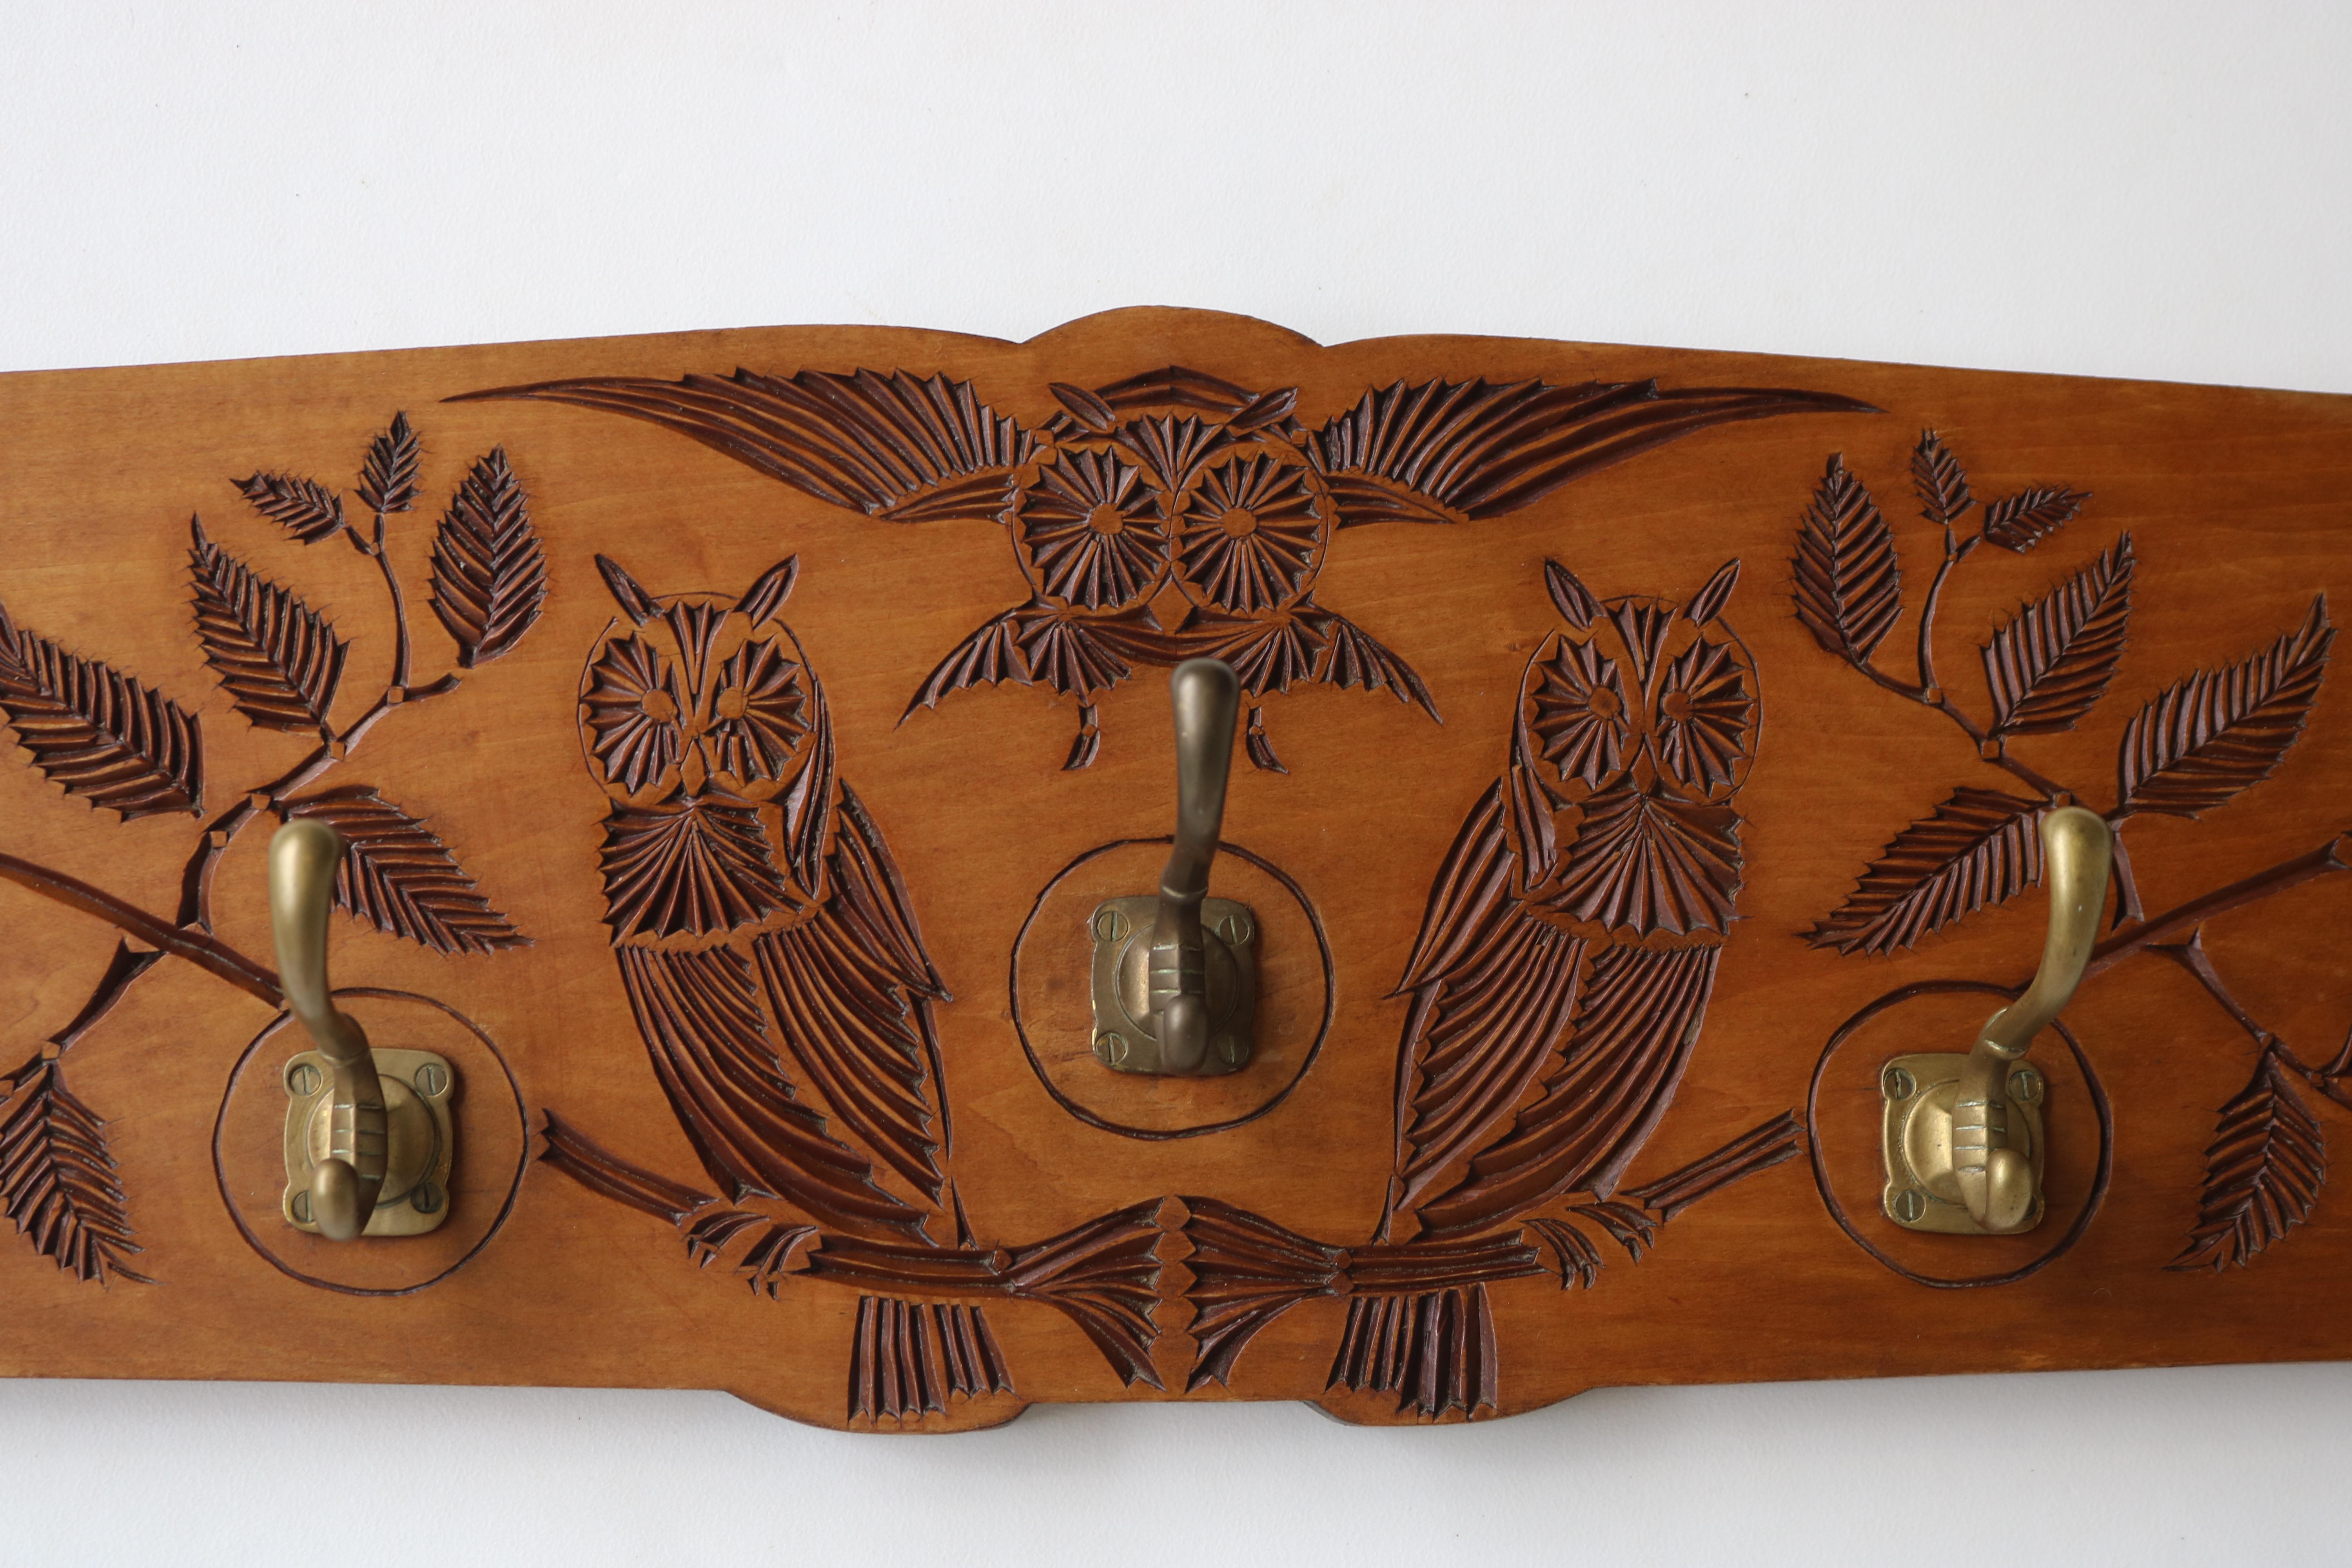 Magnifique porte-manteau Arts & Crafts hollandais avec 3 hiboux et des branches créé en 1930 et signé par le fabricant. 
Très belle décoration sculptée à l'écaille présentant des branches, des feuilles et 3 impressionnants hiboux.
Les hiboux